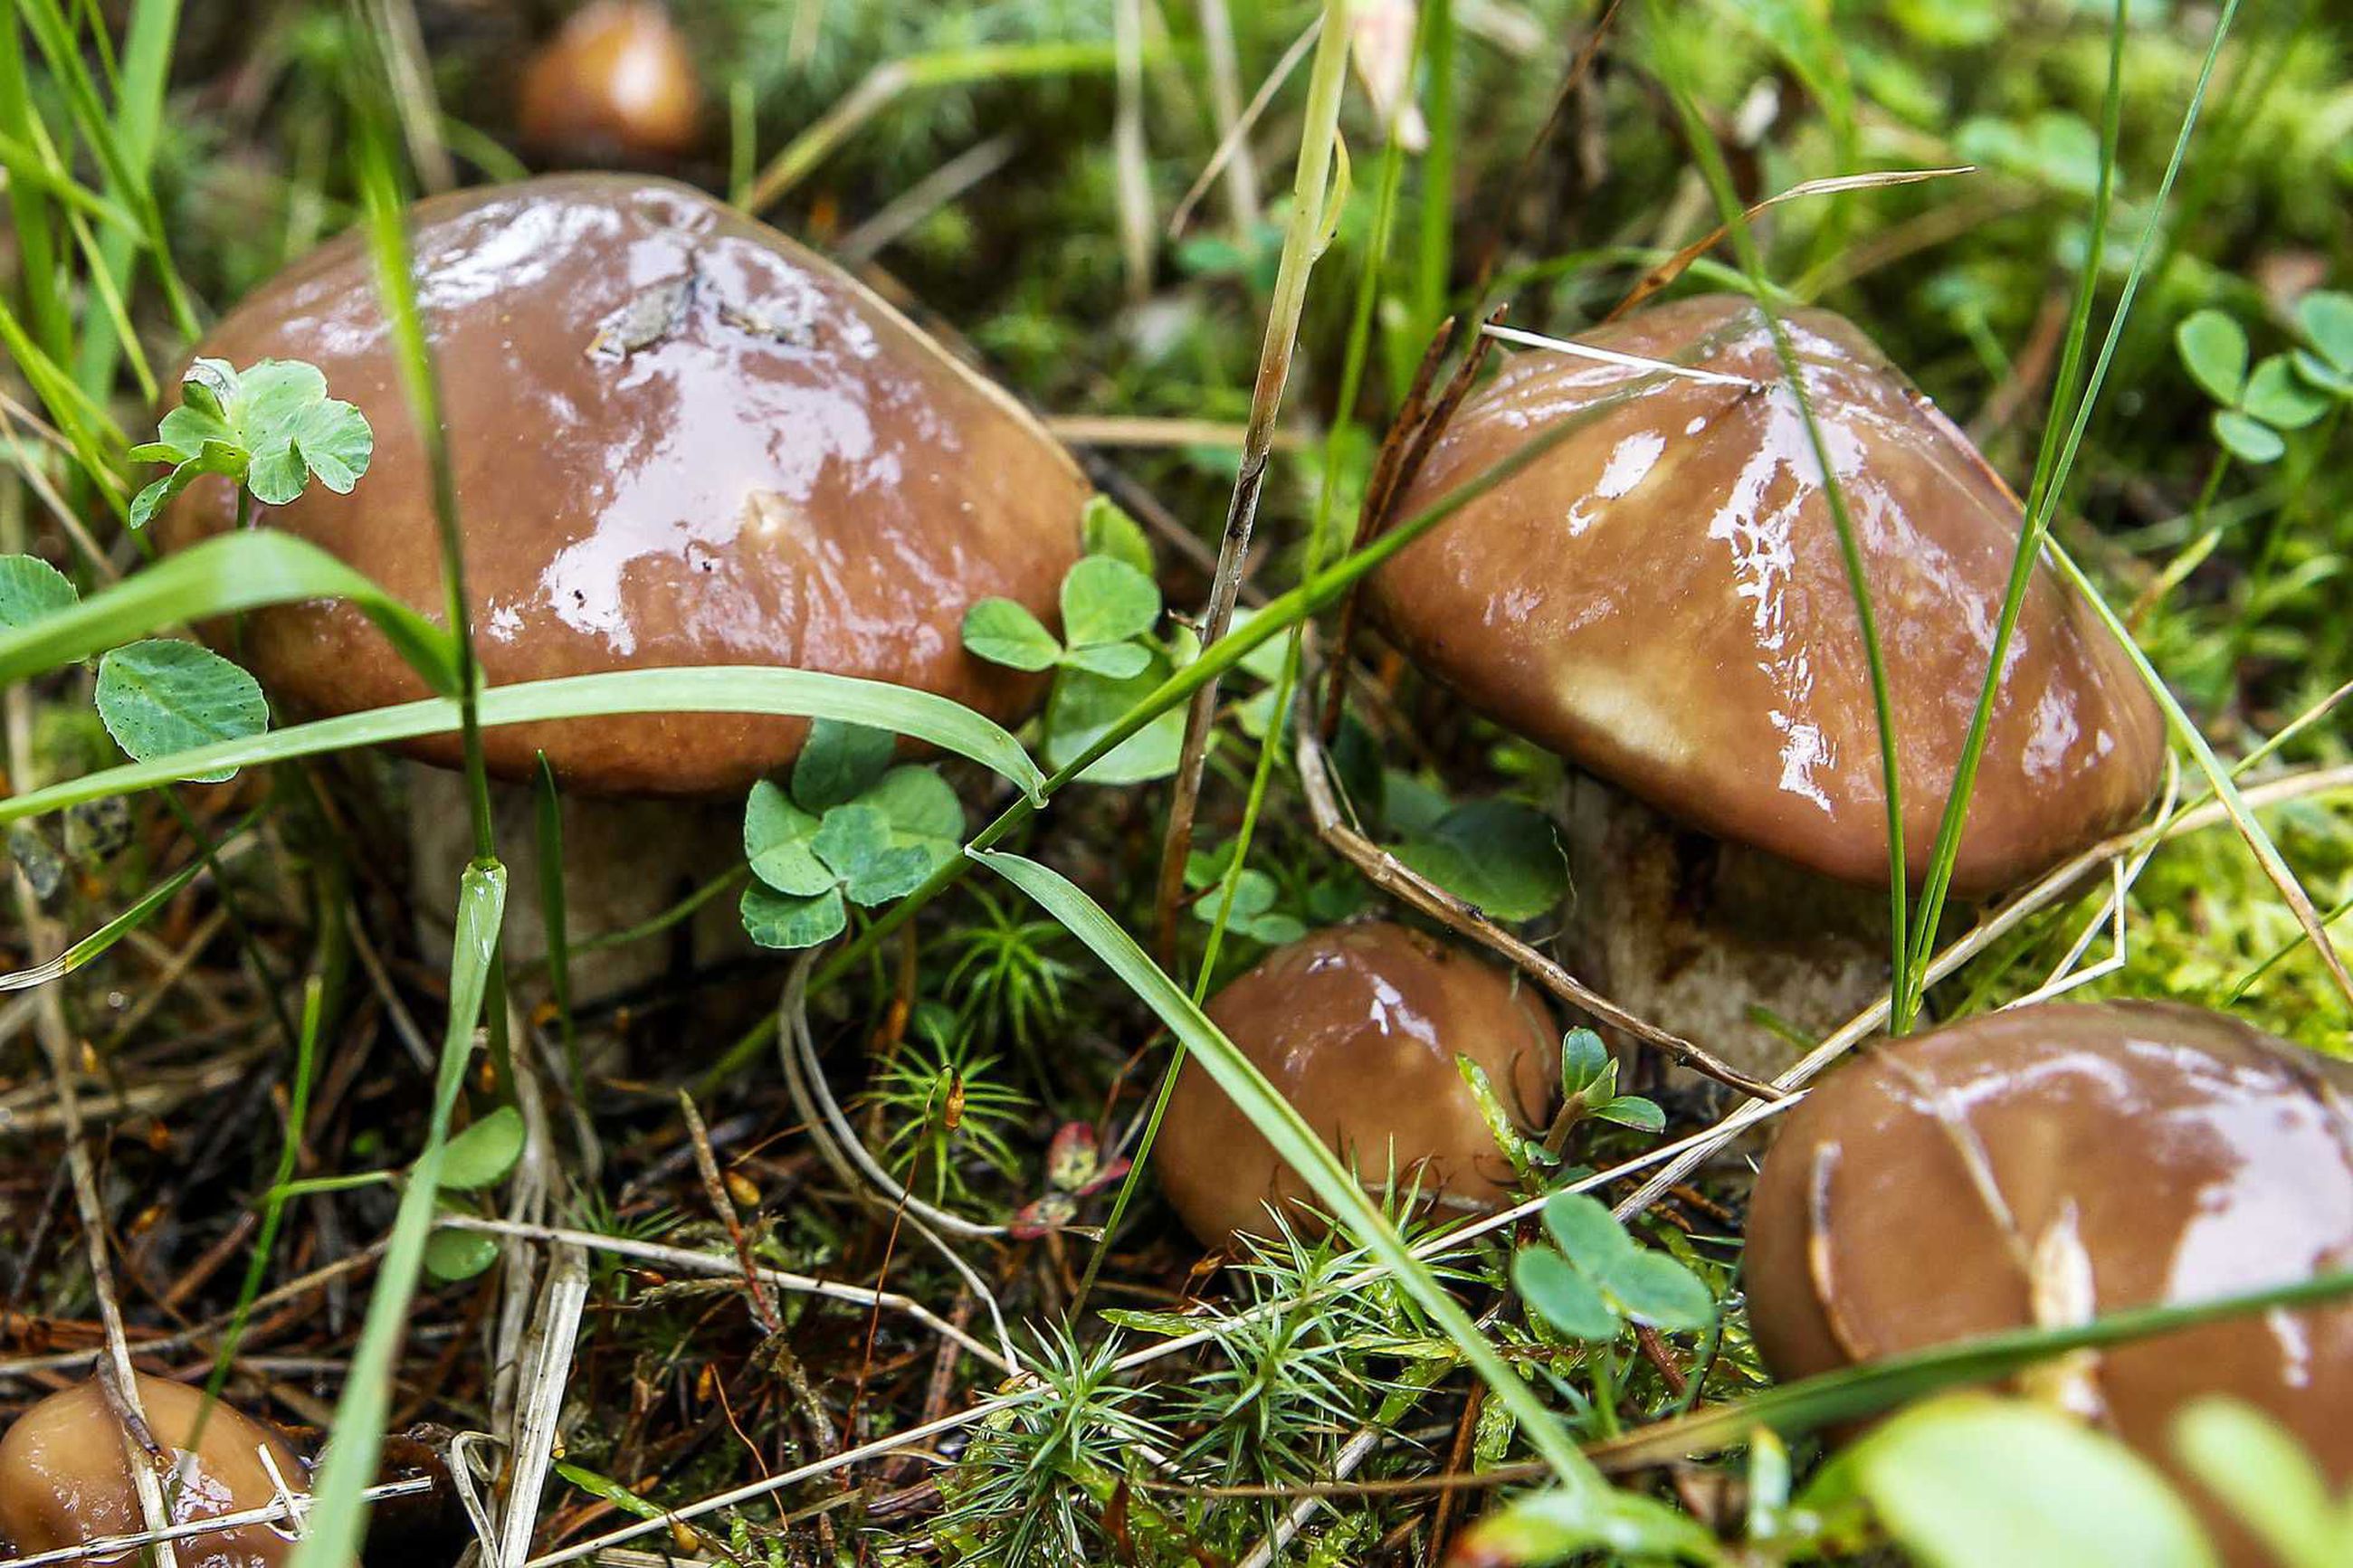 Syksyinen herkku voi olla myrkky – sienet kannattaa opetella tuntemaan |  Pyhajokiseutu